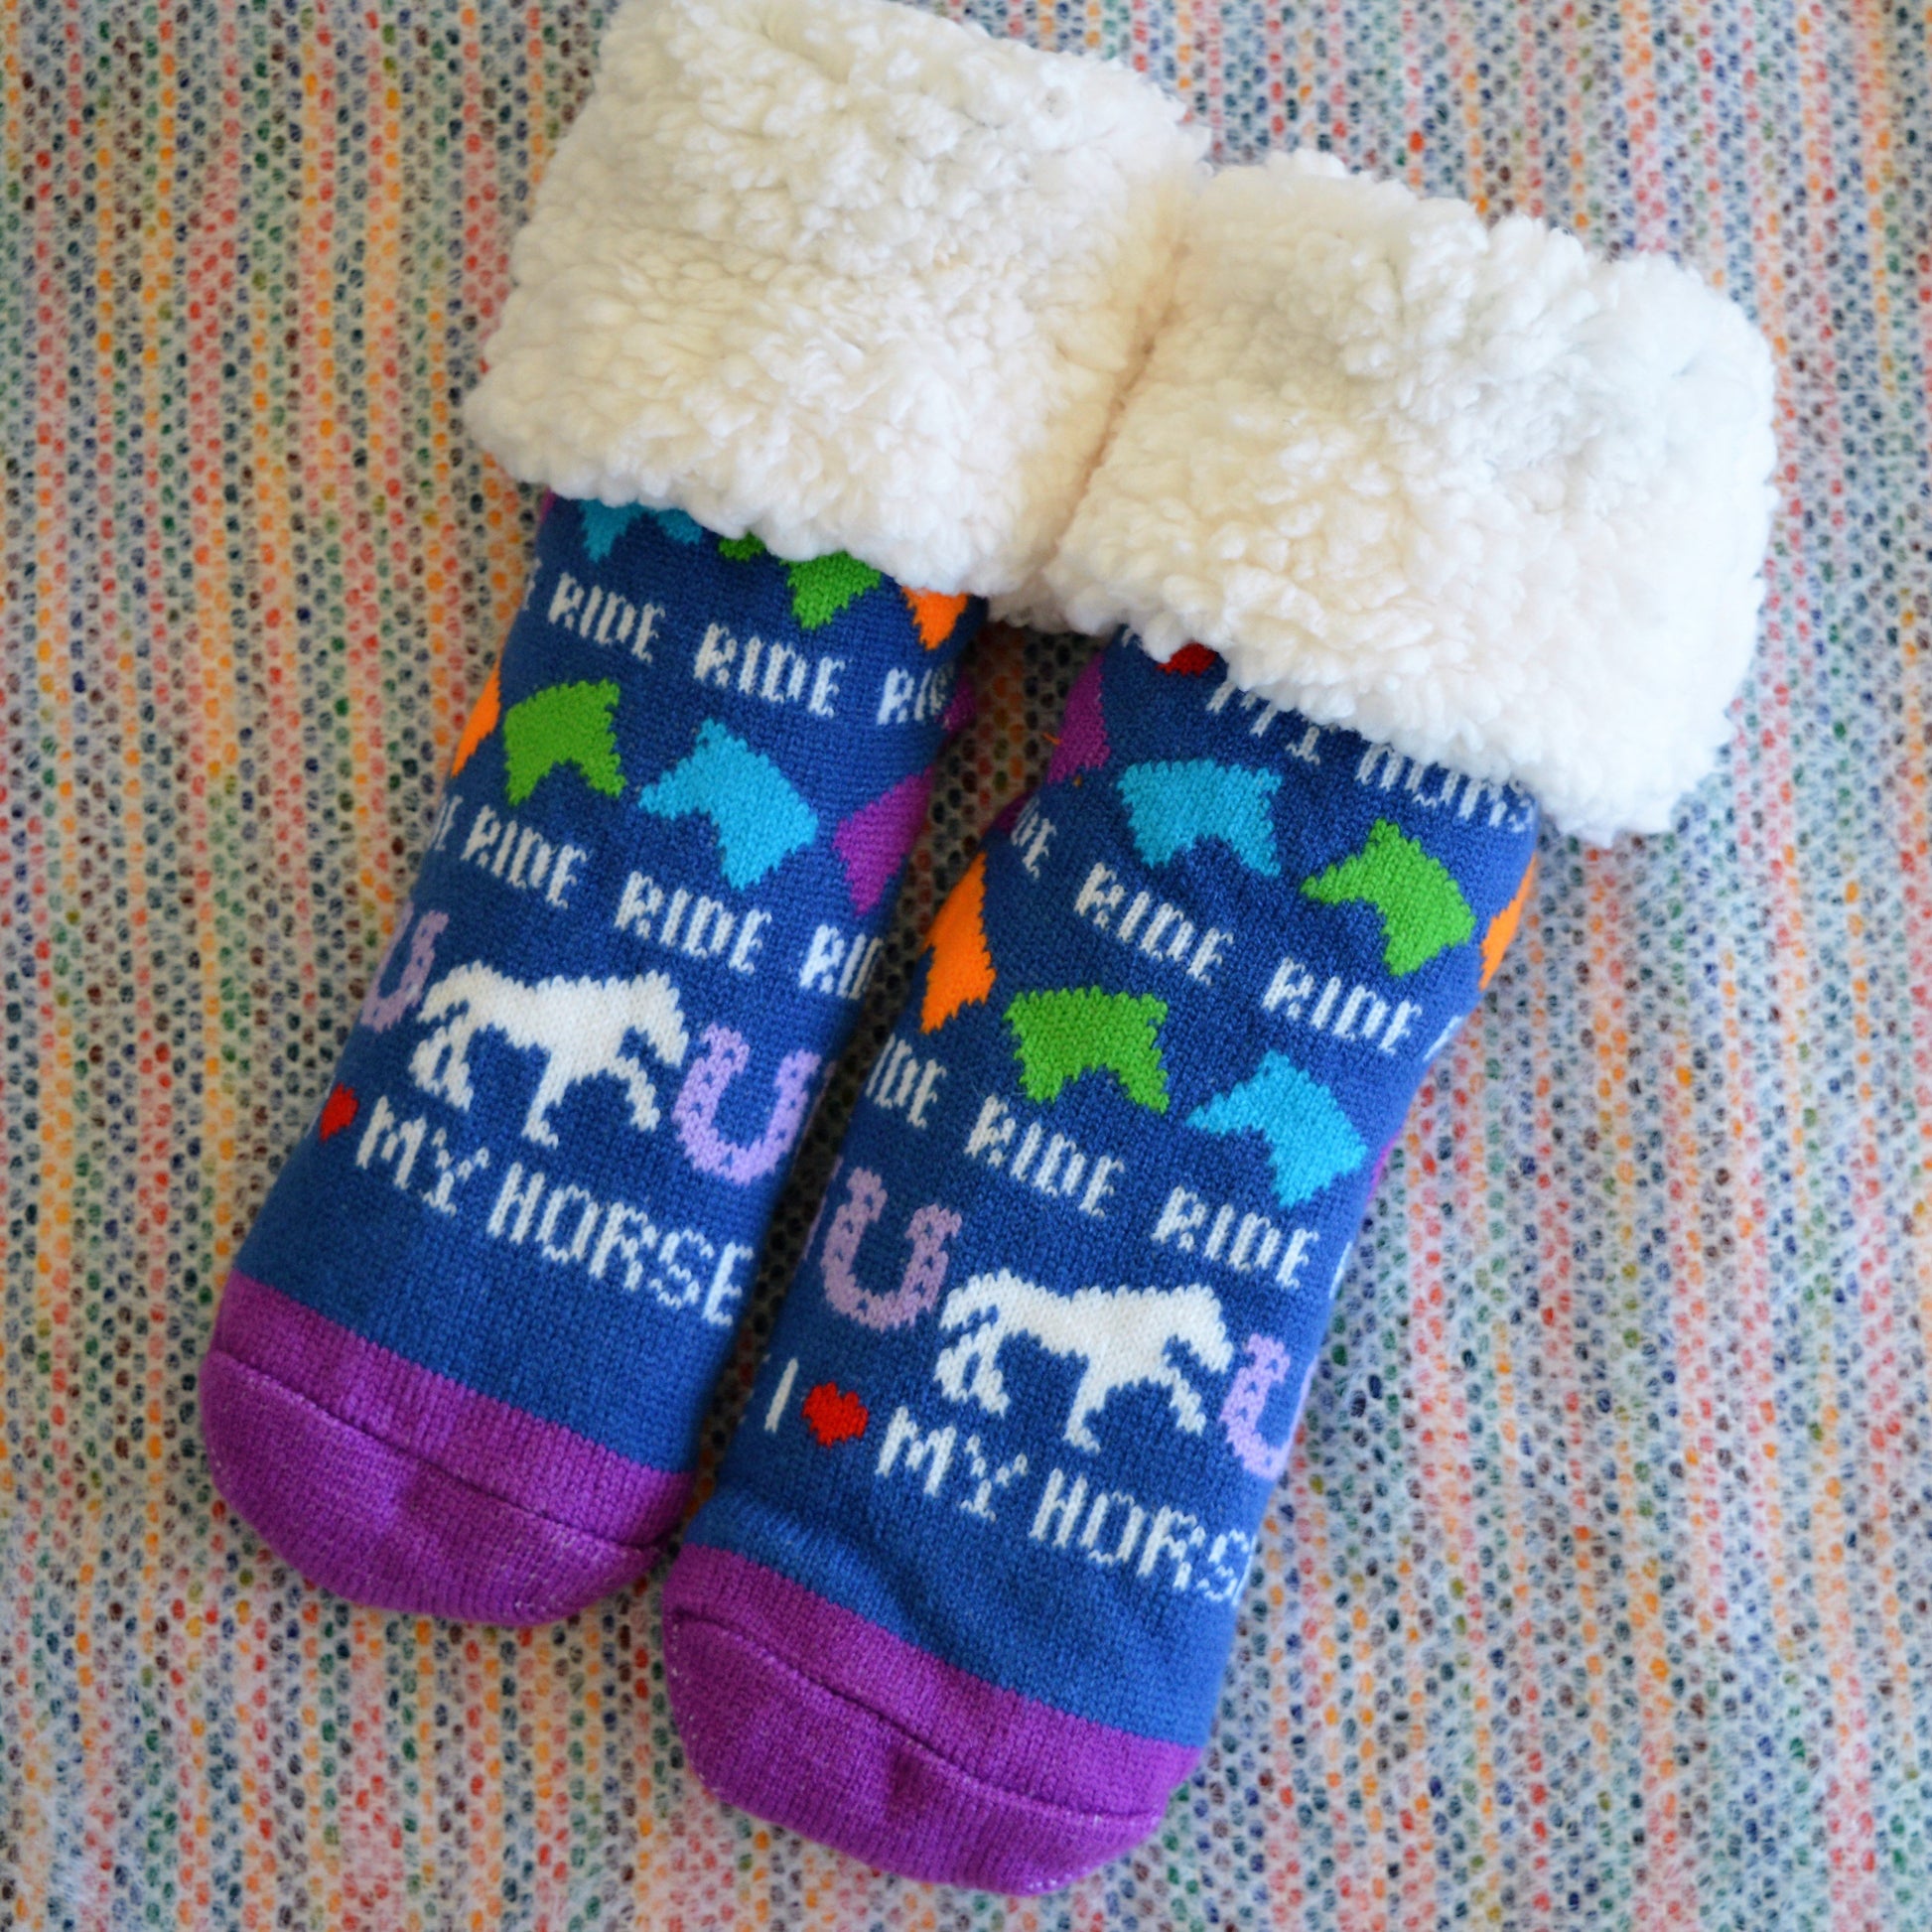 Horse Women's Socks 